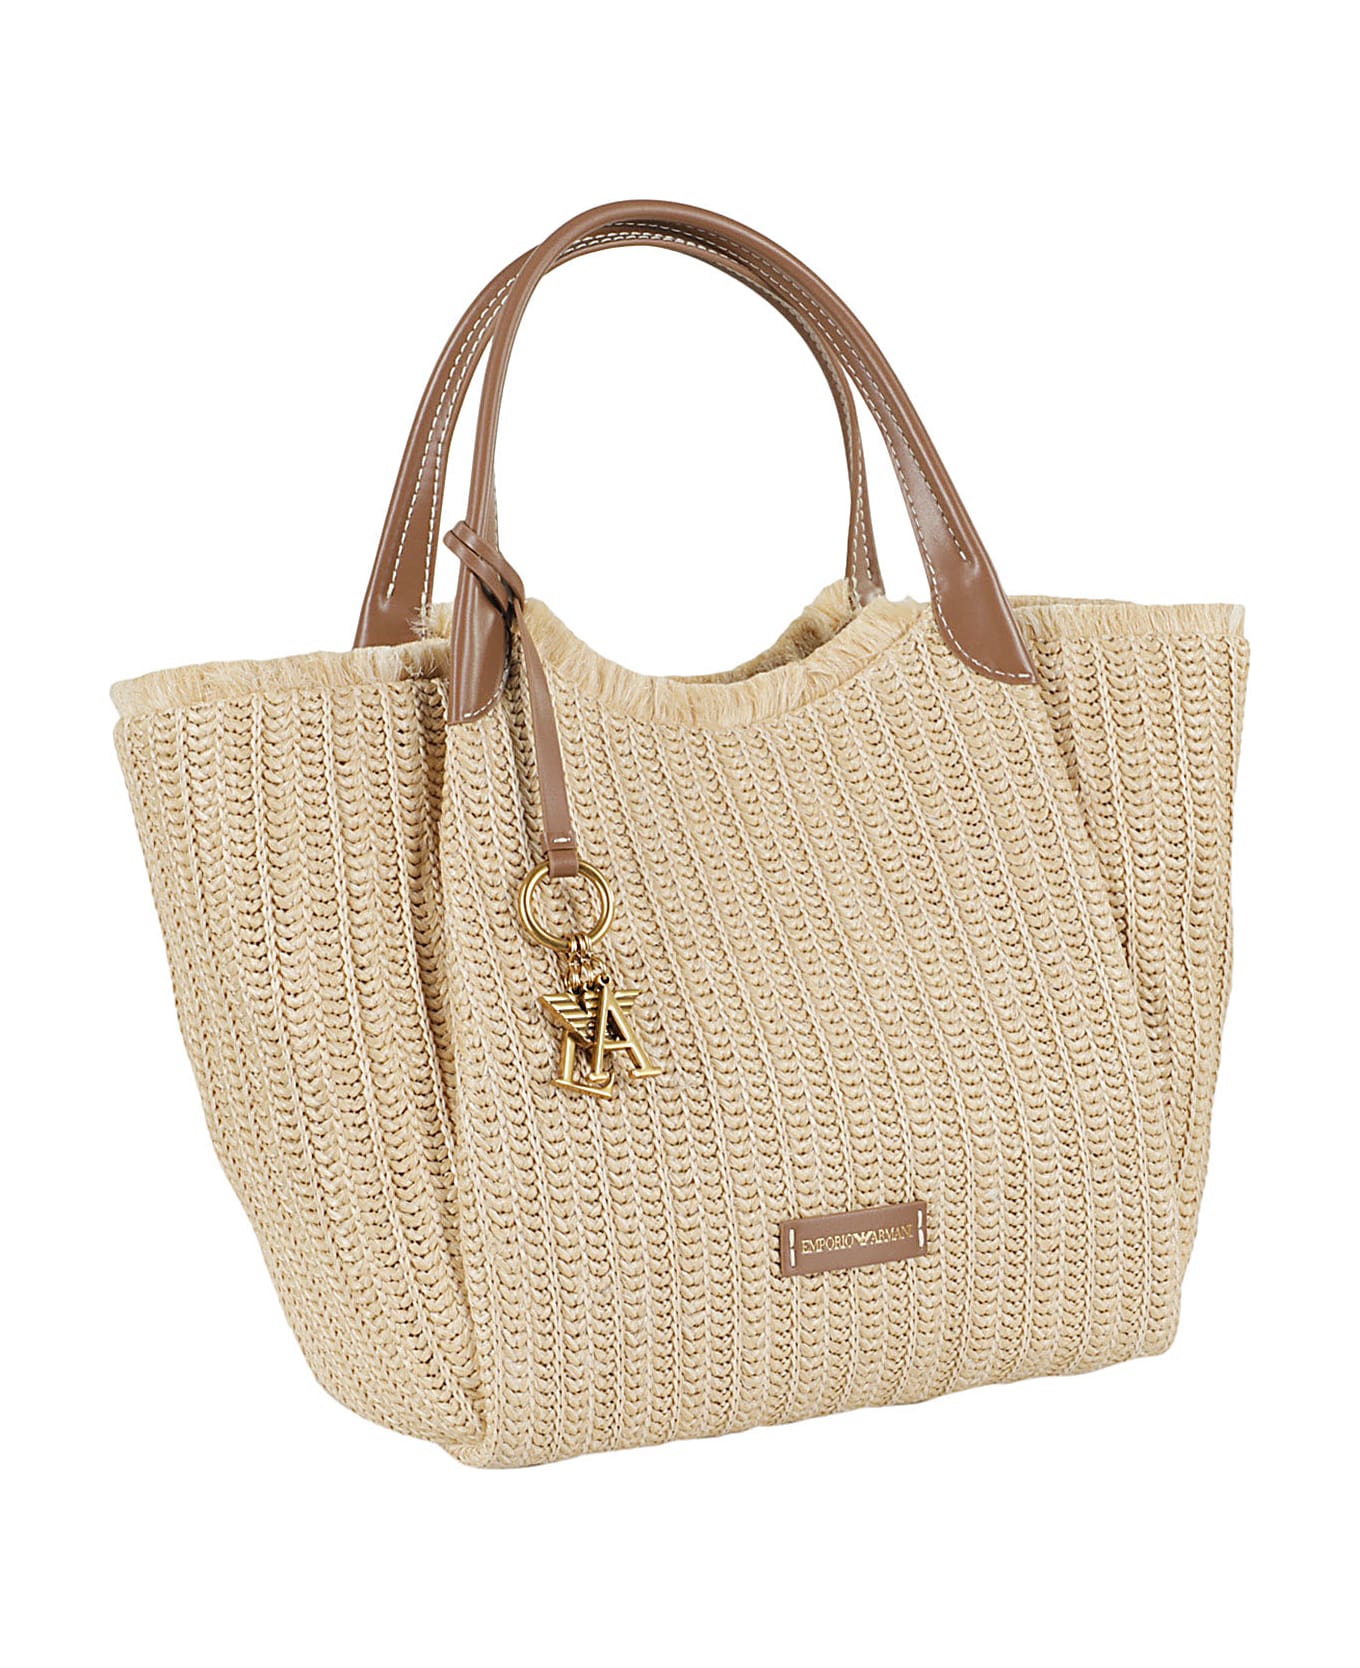 Emporio Armani Shopping Bag